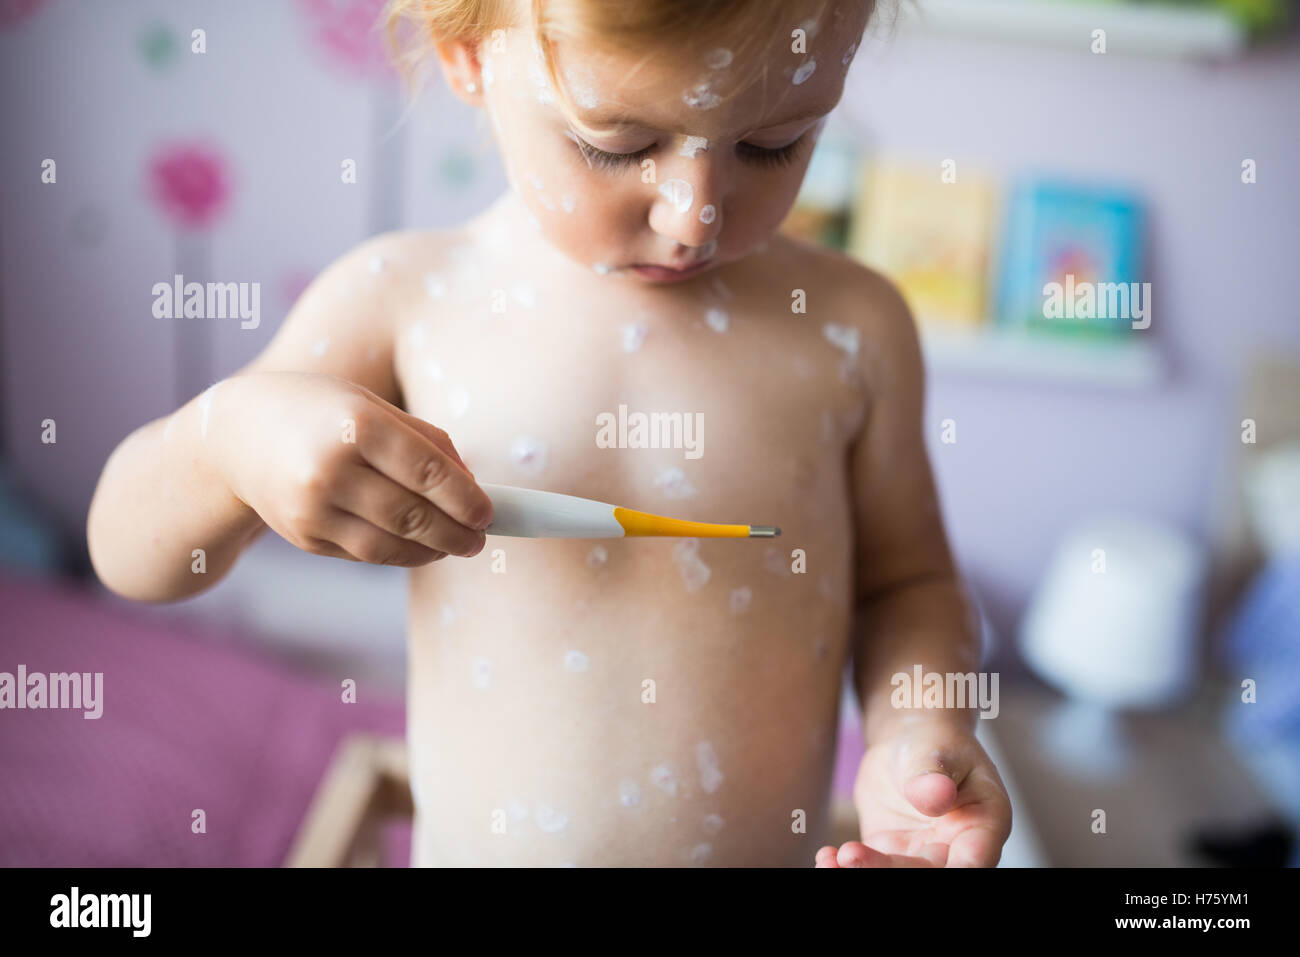 Bellissima bambina con la varicella, tenendo il termometro Foto Stock